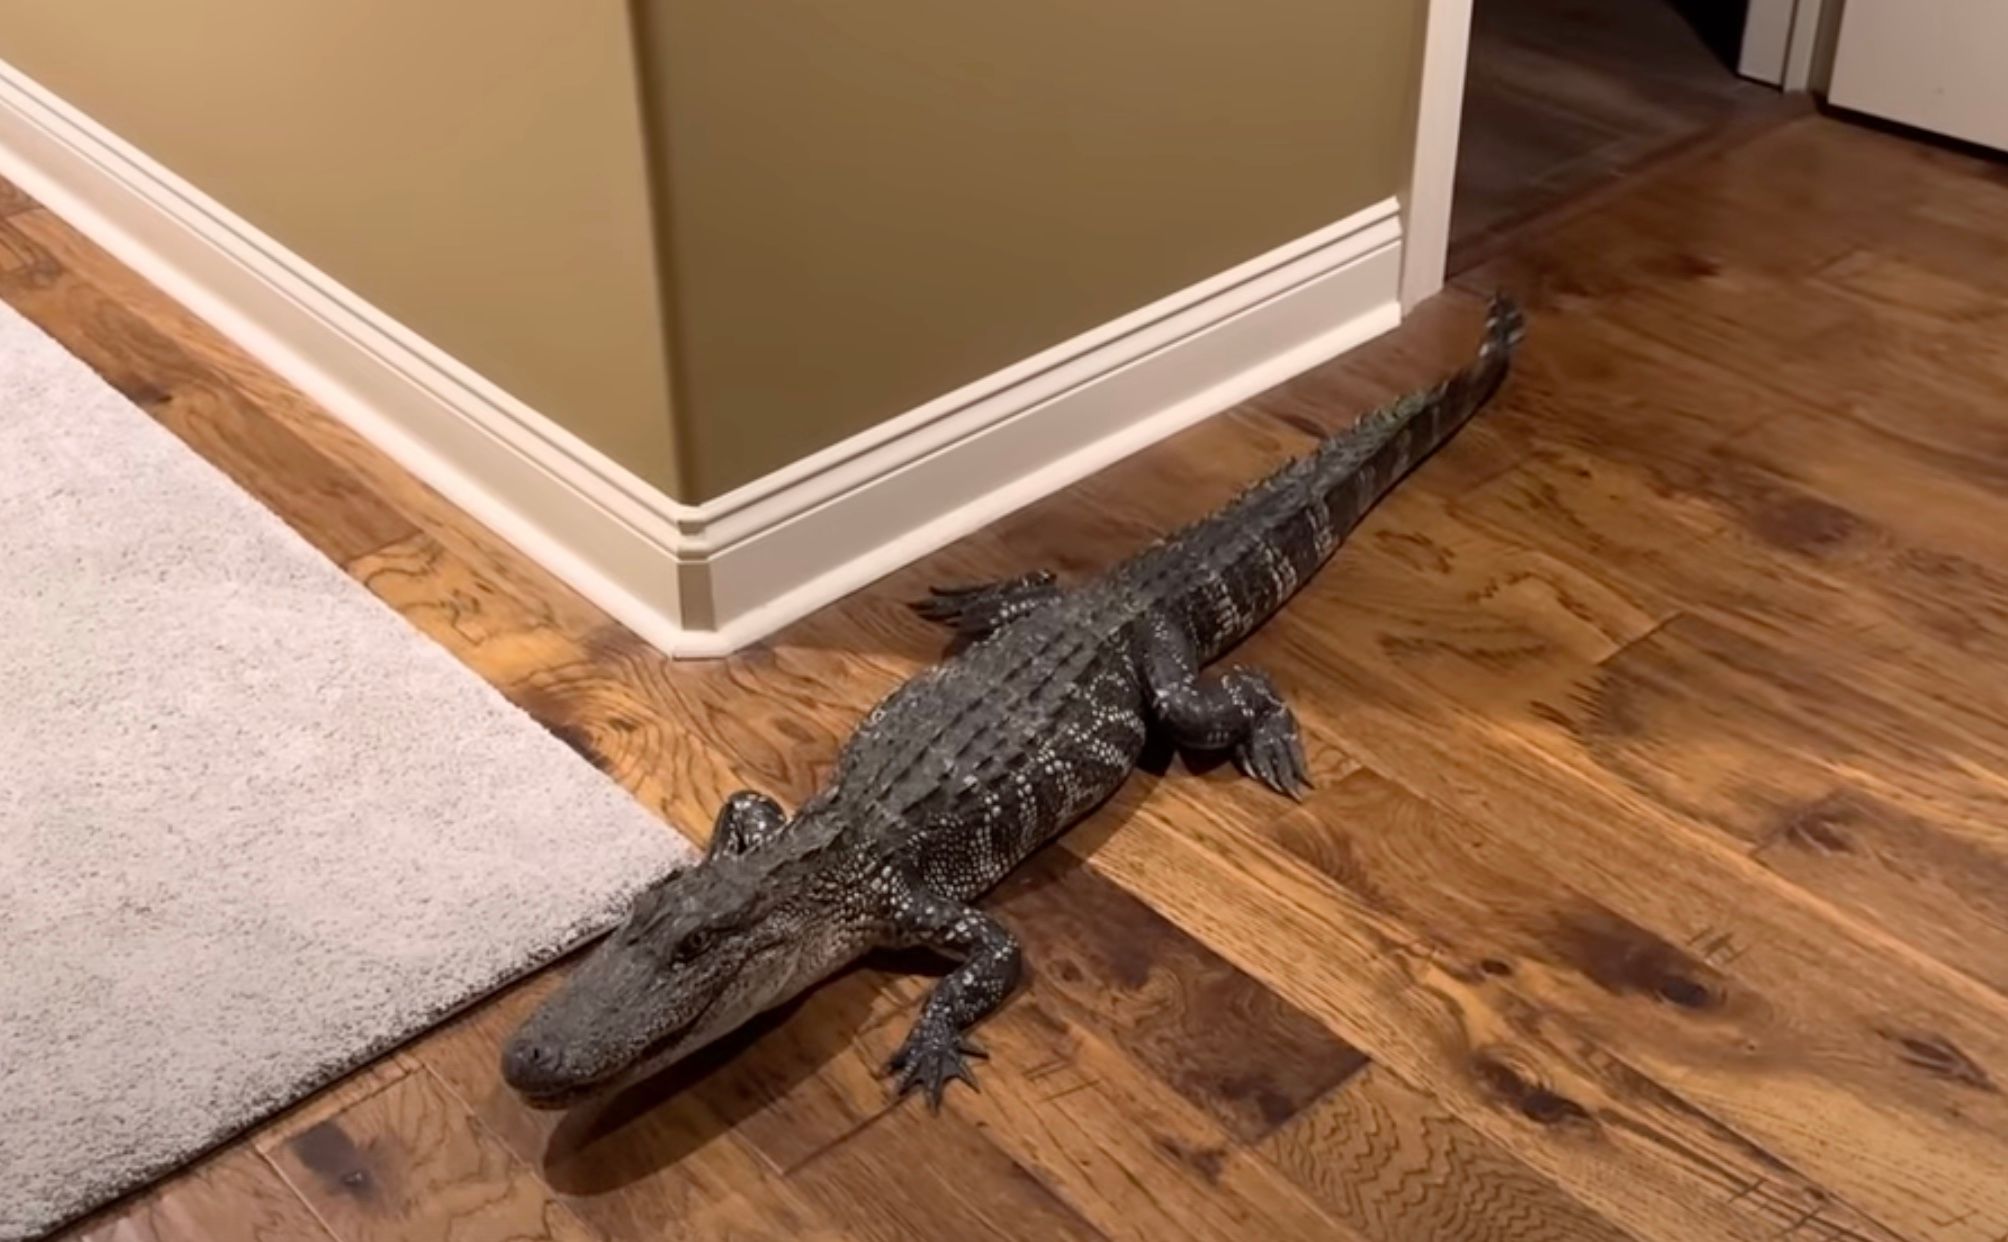 В США аллигатор проник в дом через собачью дверь